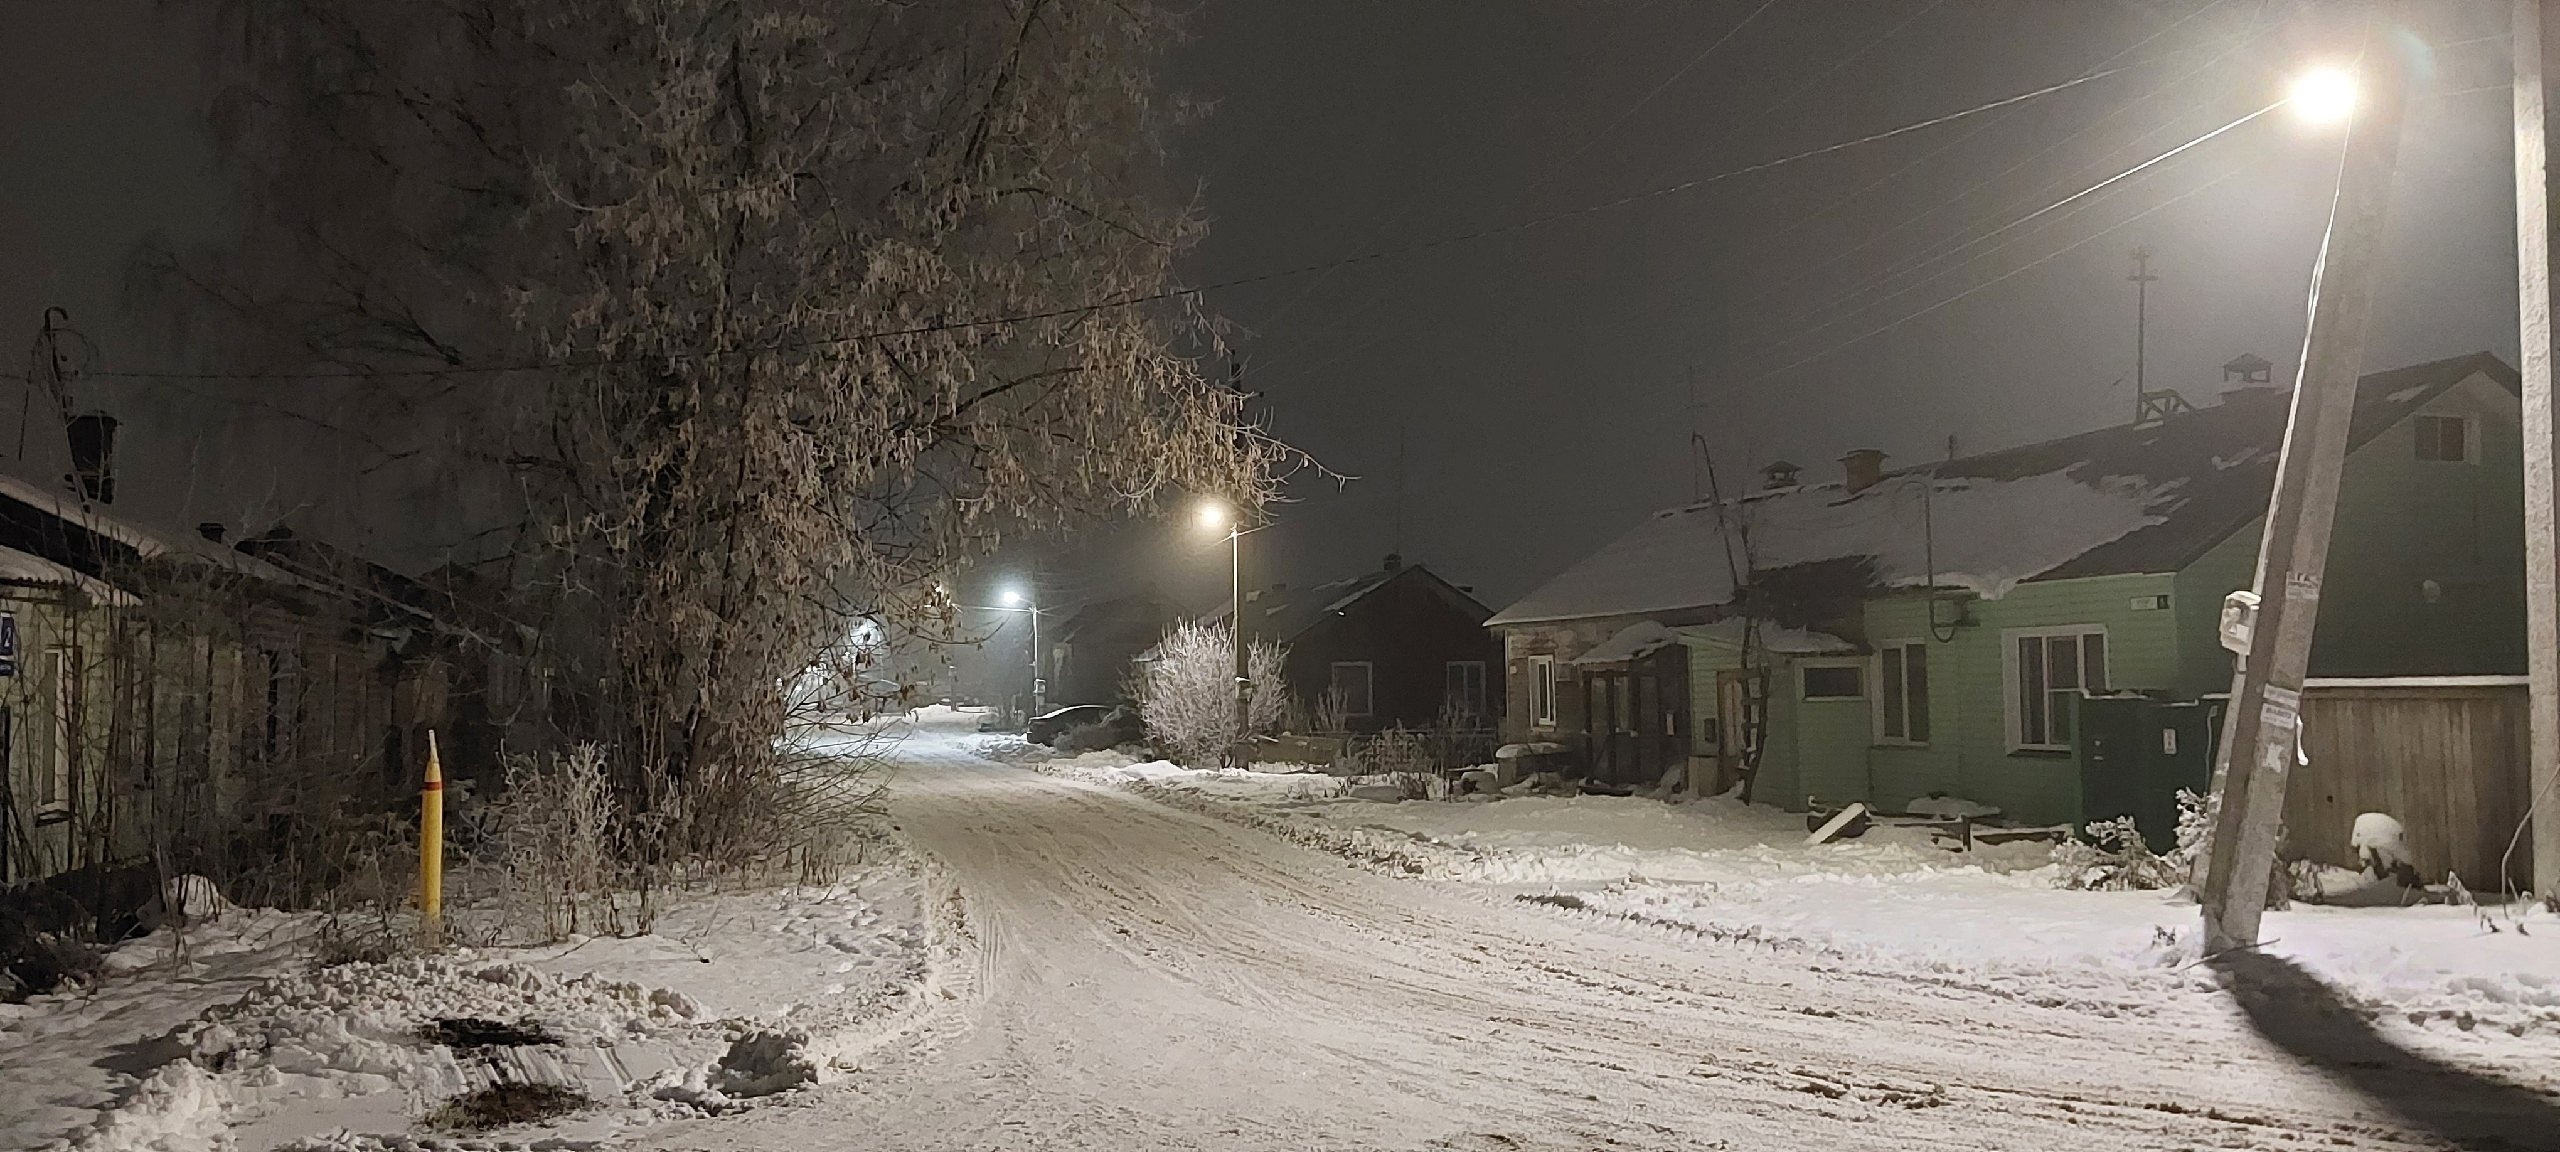 МЧС объявило метеопредупреждение из-за аномальных морозов в Кирове